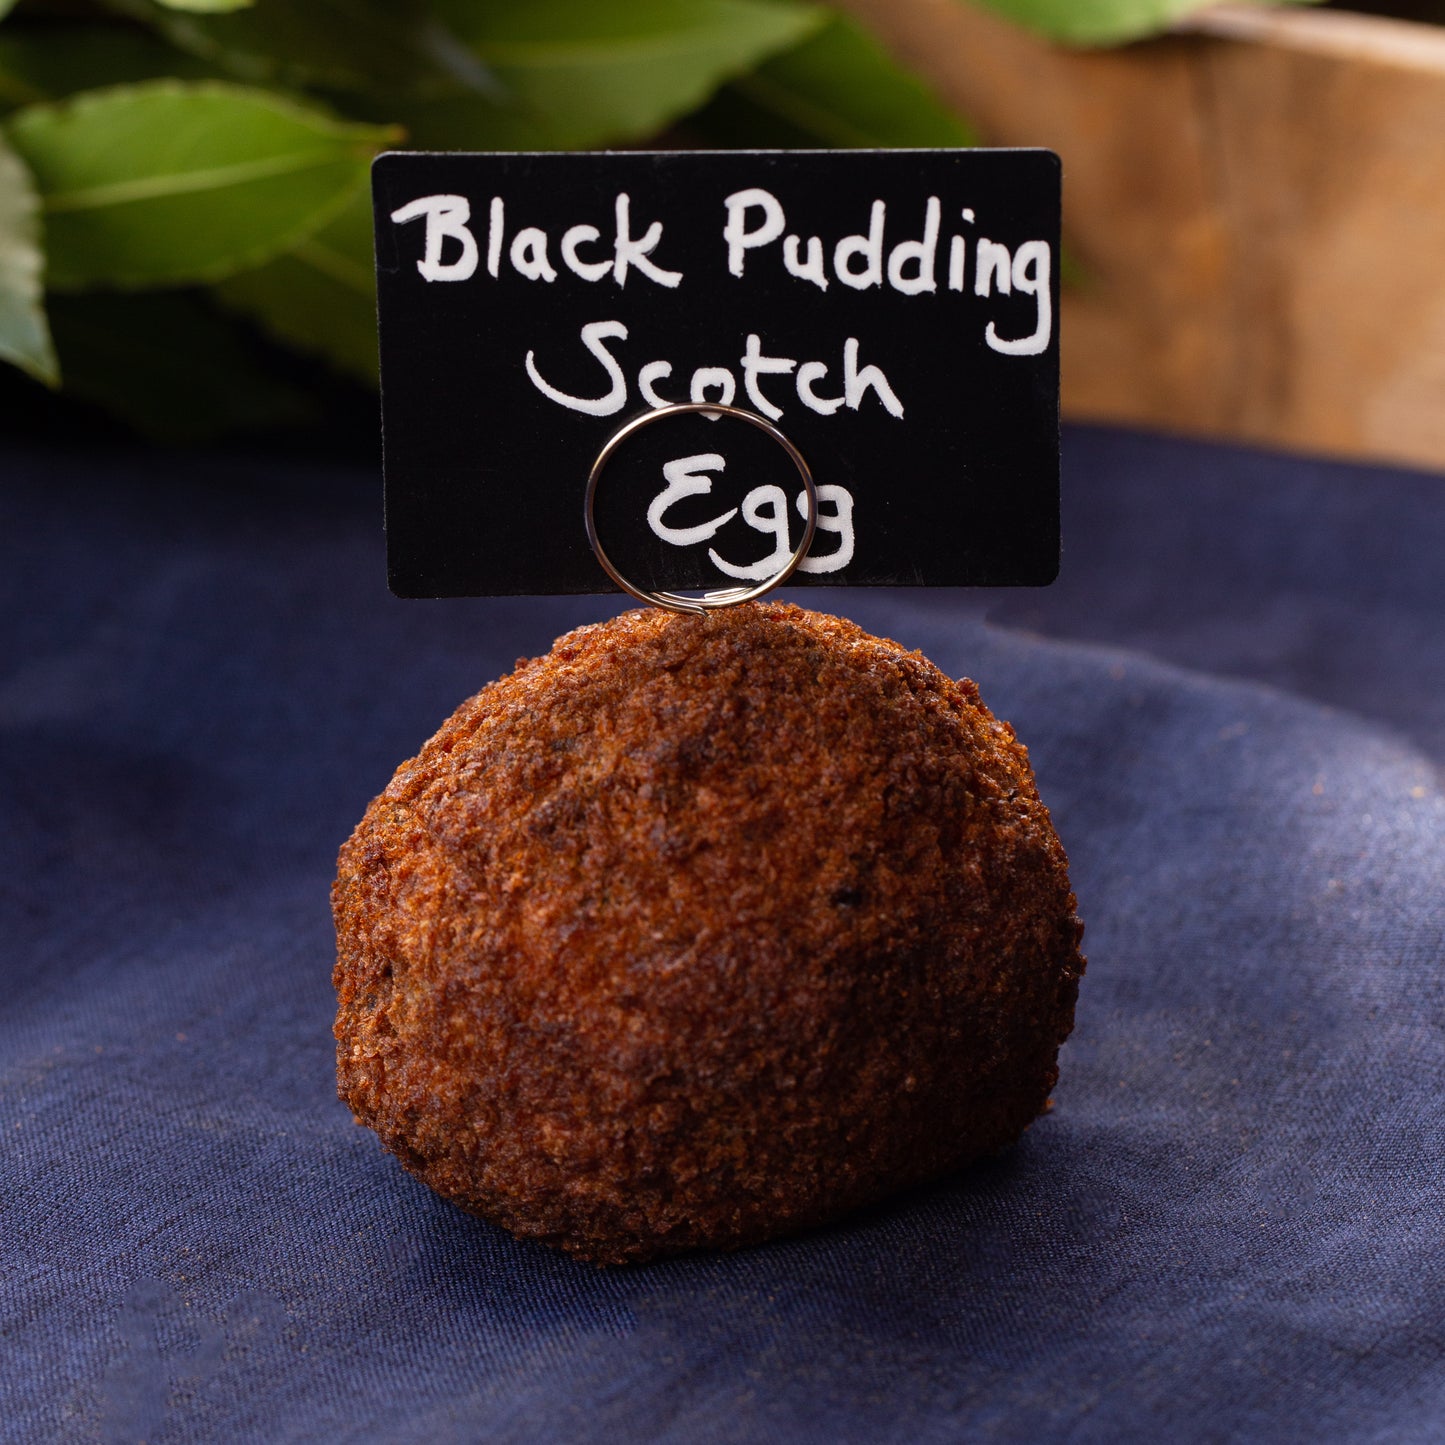 Black Pudding Scotch Egg